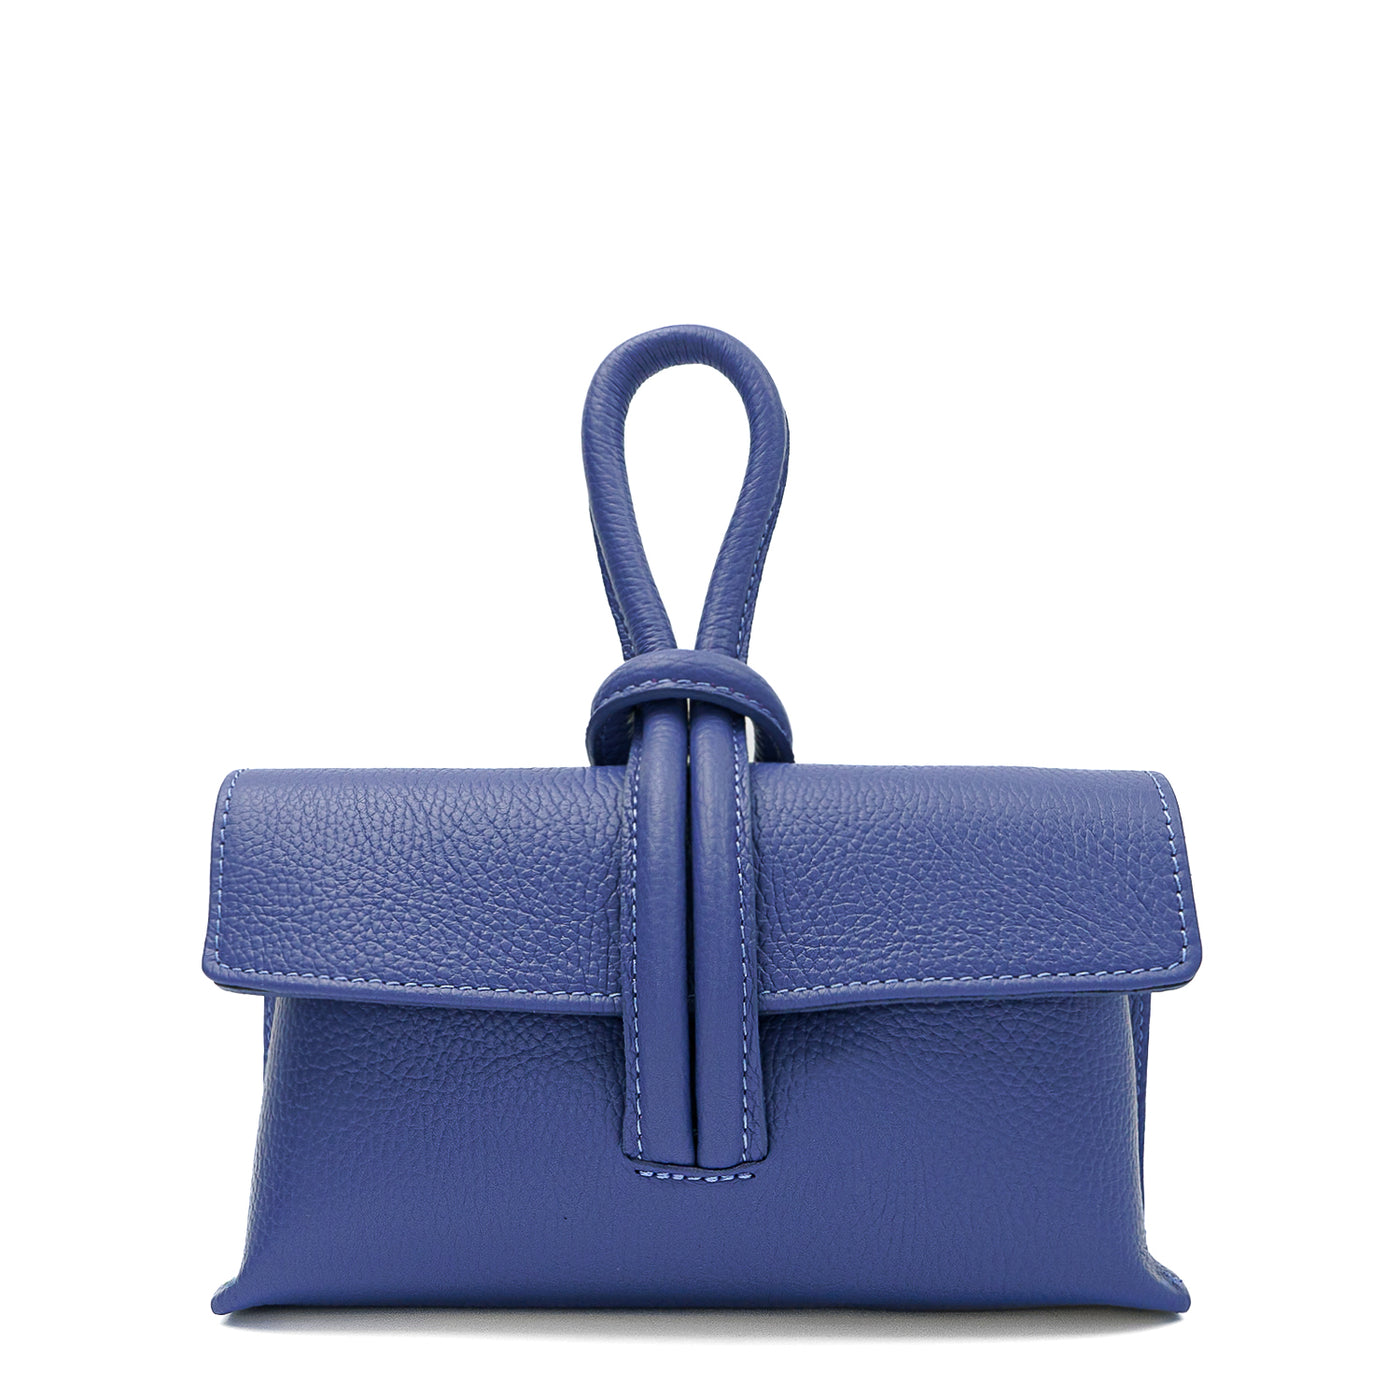 Leather bag "Barletta", Indigo Blue